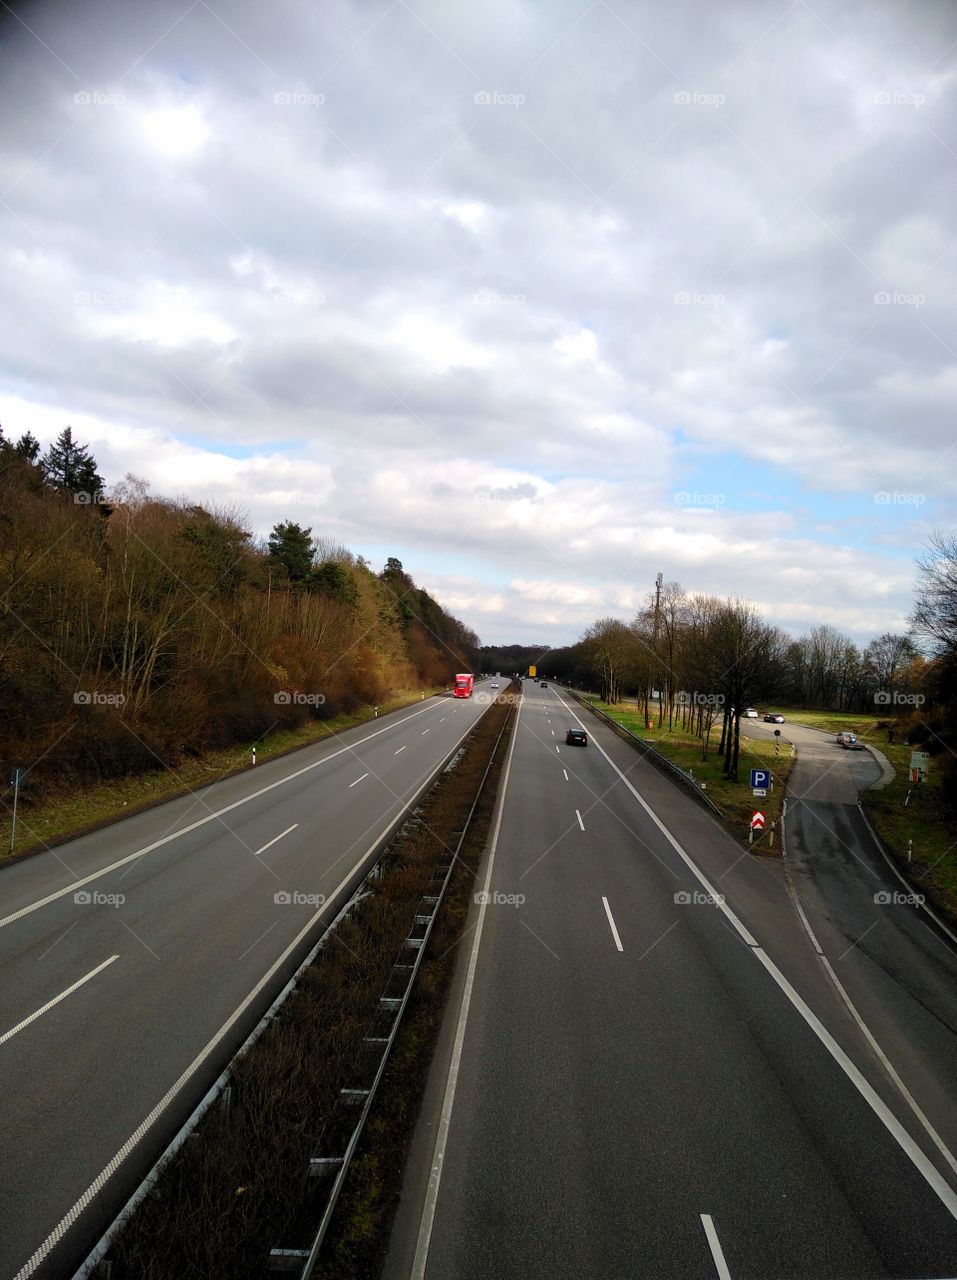 leere Autobahn
emty highway